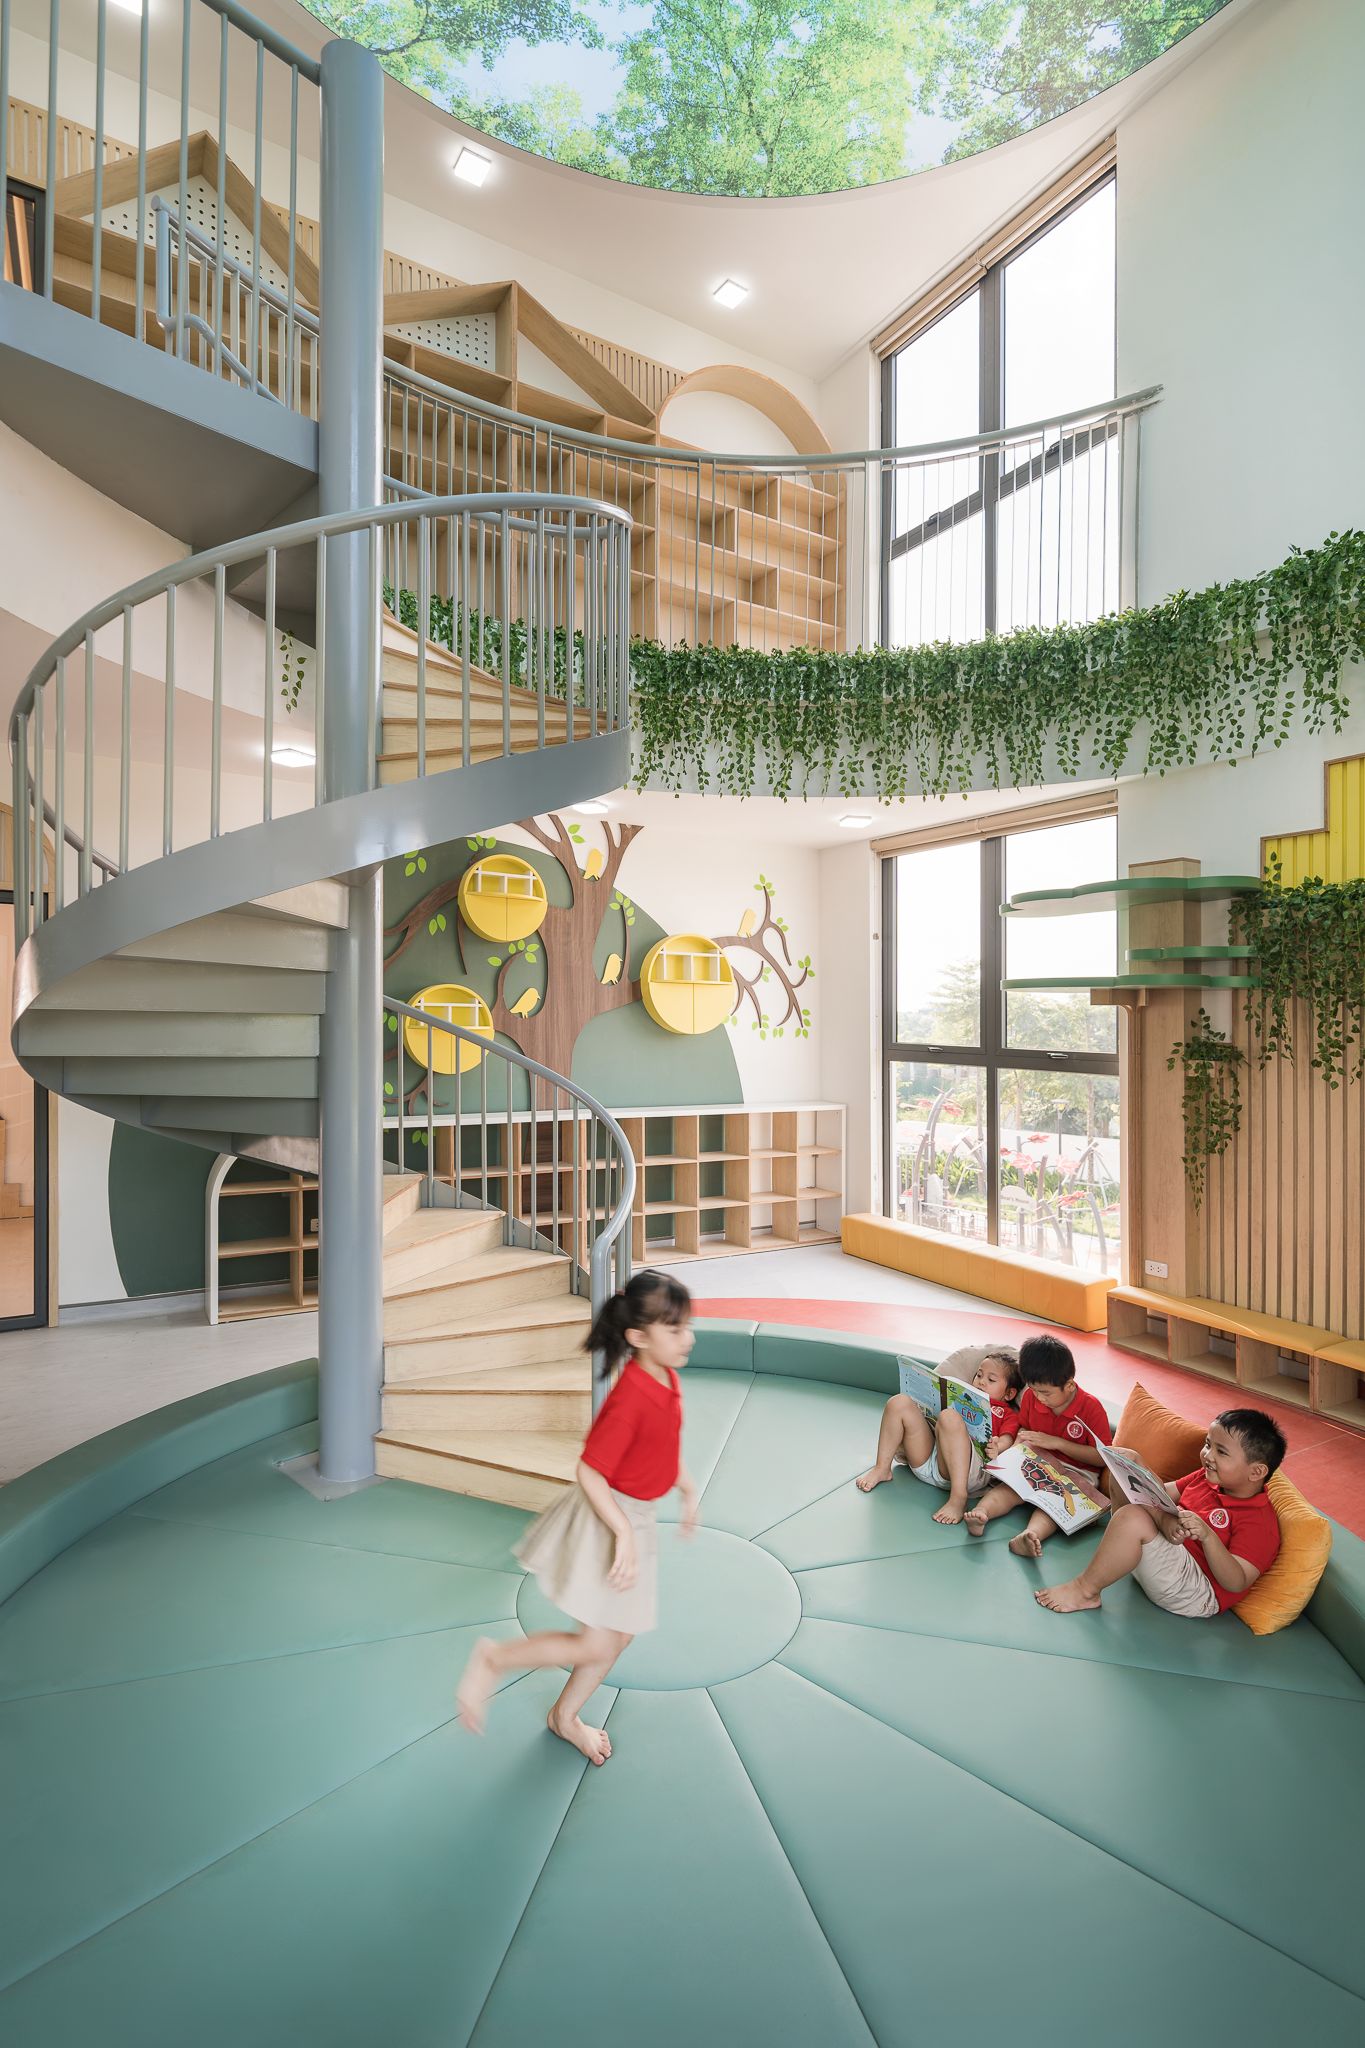 图片[11]|枫熊幼儿园|ART-Arrakis | 建筑室内设计的创新与灵感